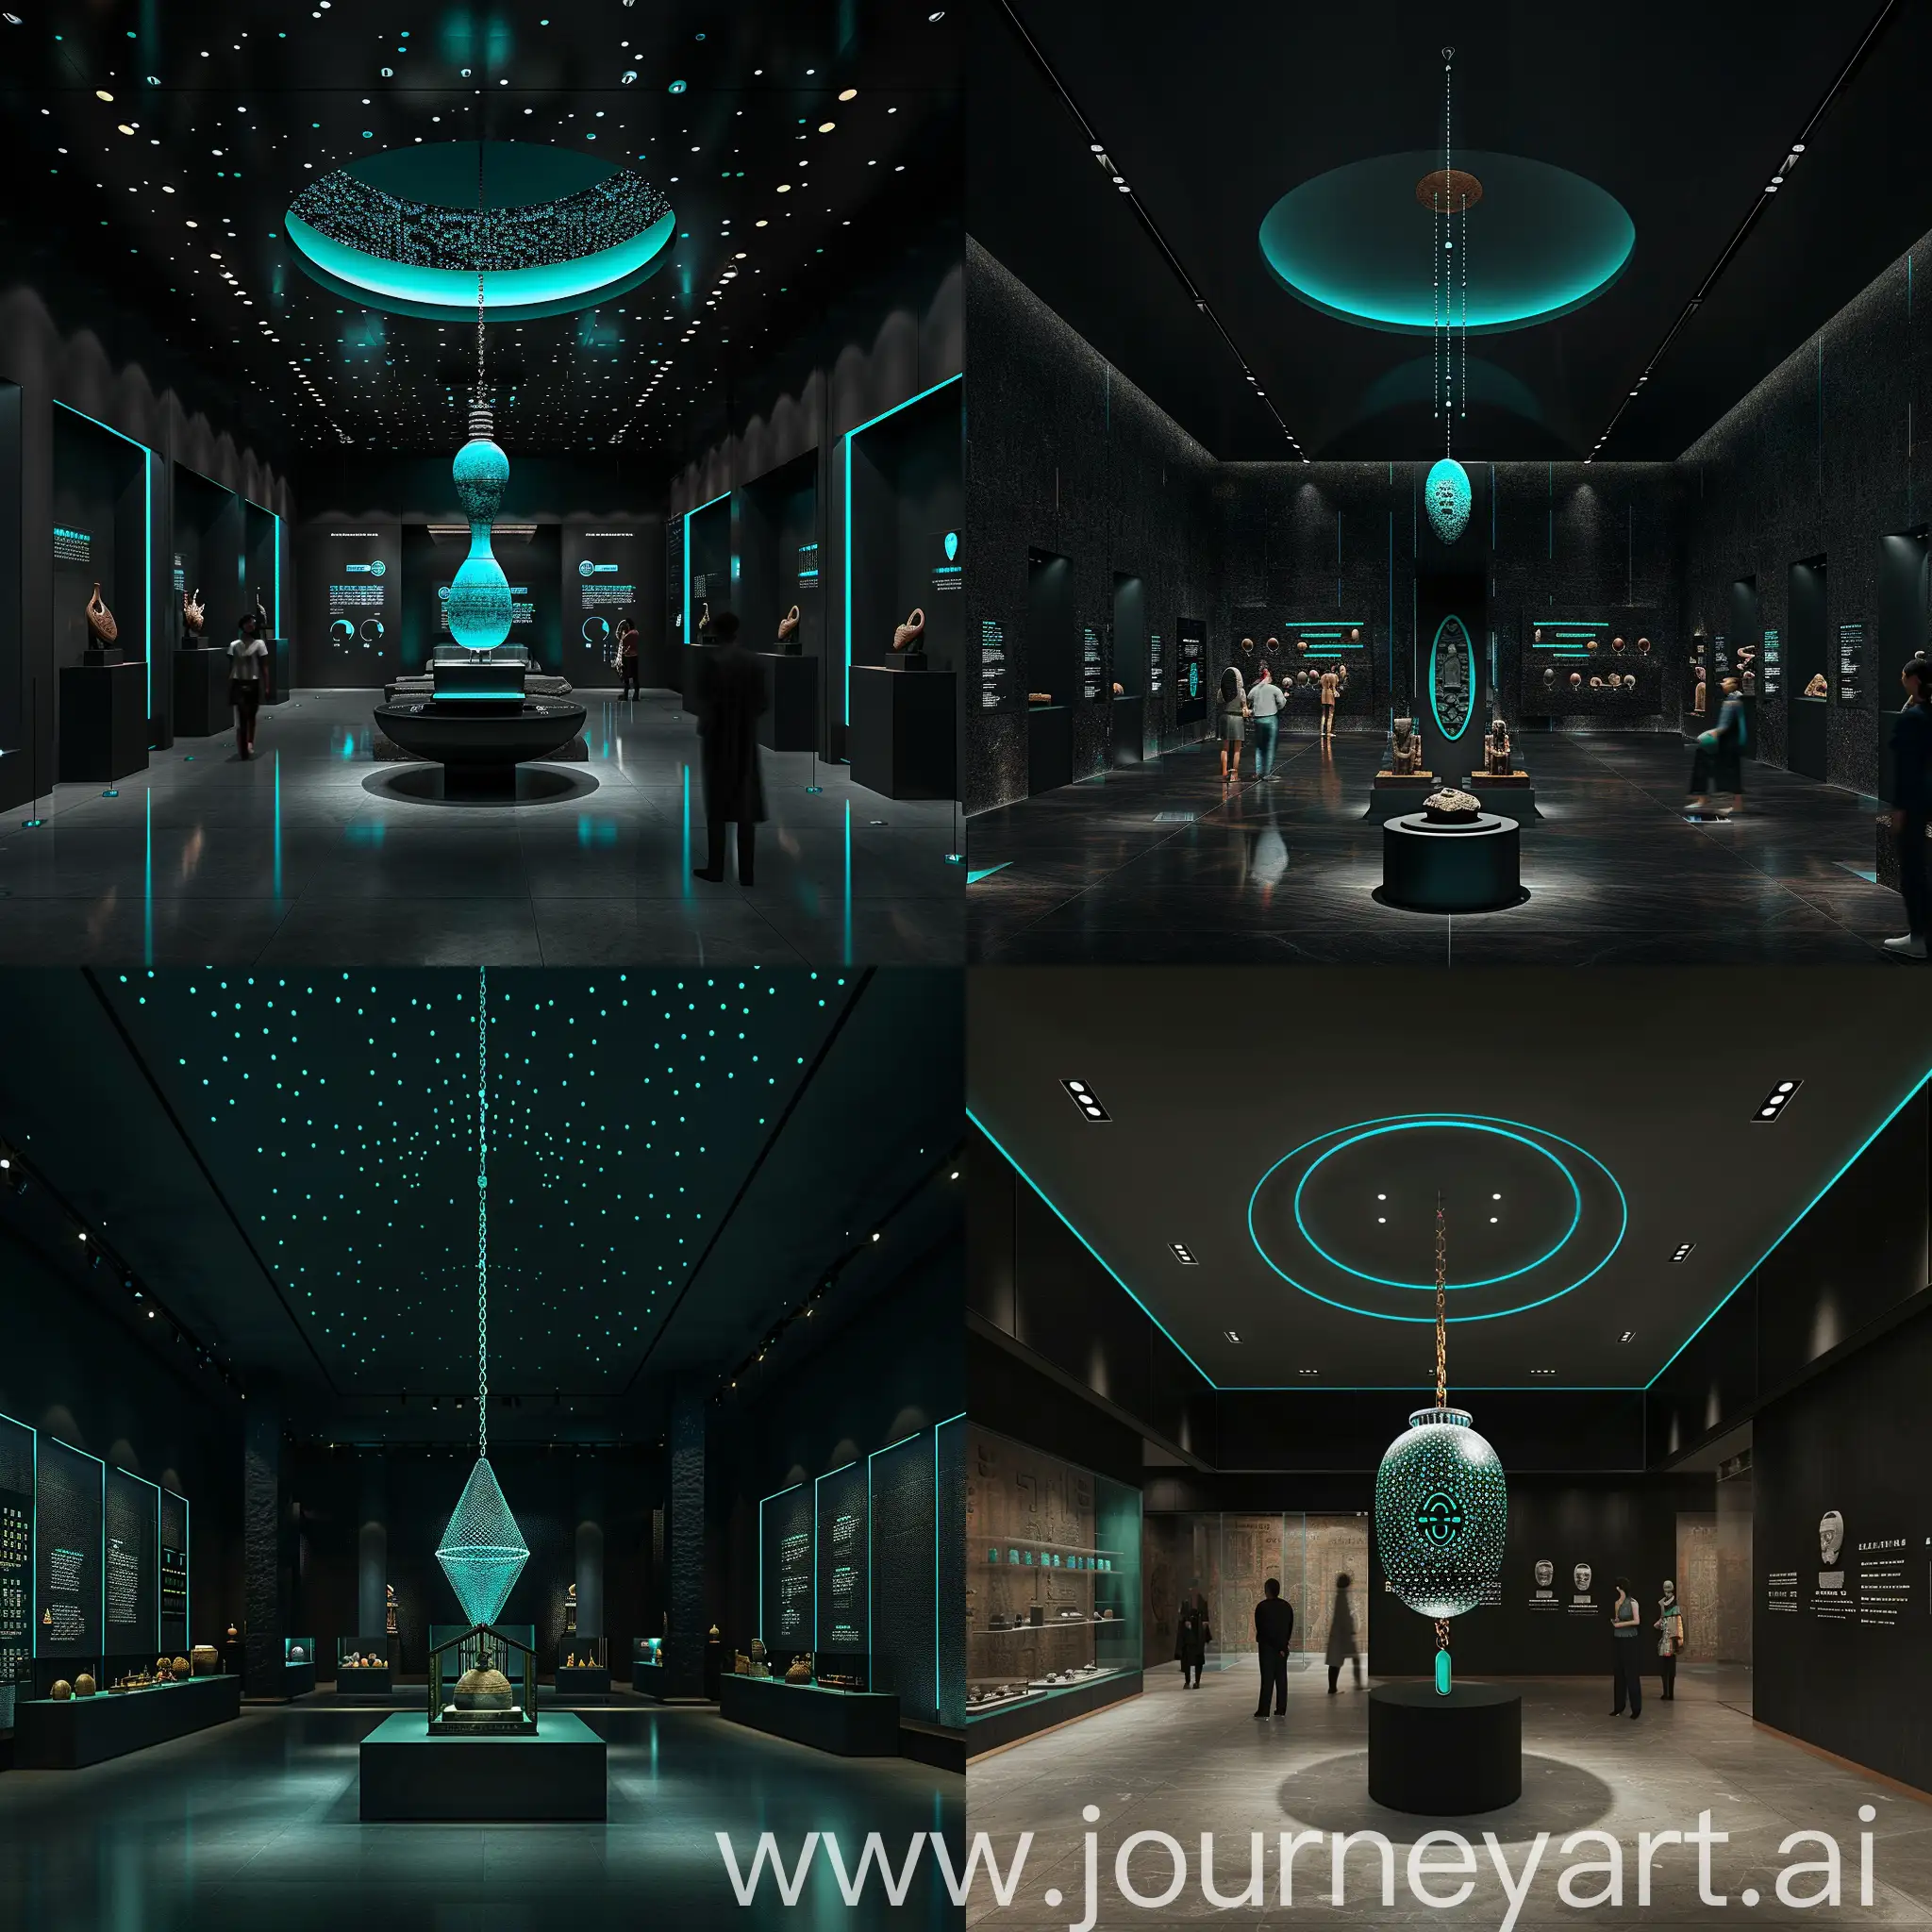 设计一个专题的陈列馆，主要展示三星堆文物，展馆空间色调为黑色和浅墨绿色点缀，中间可以有个大的吊饰